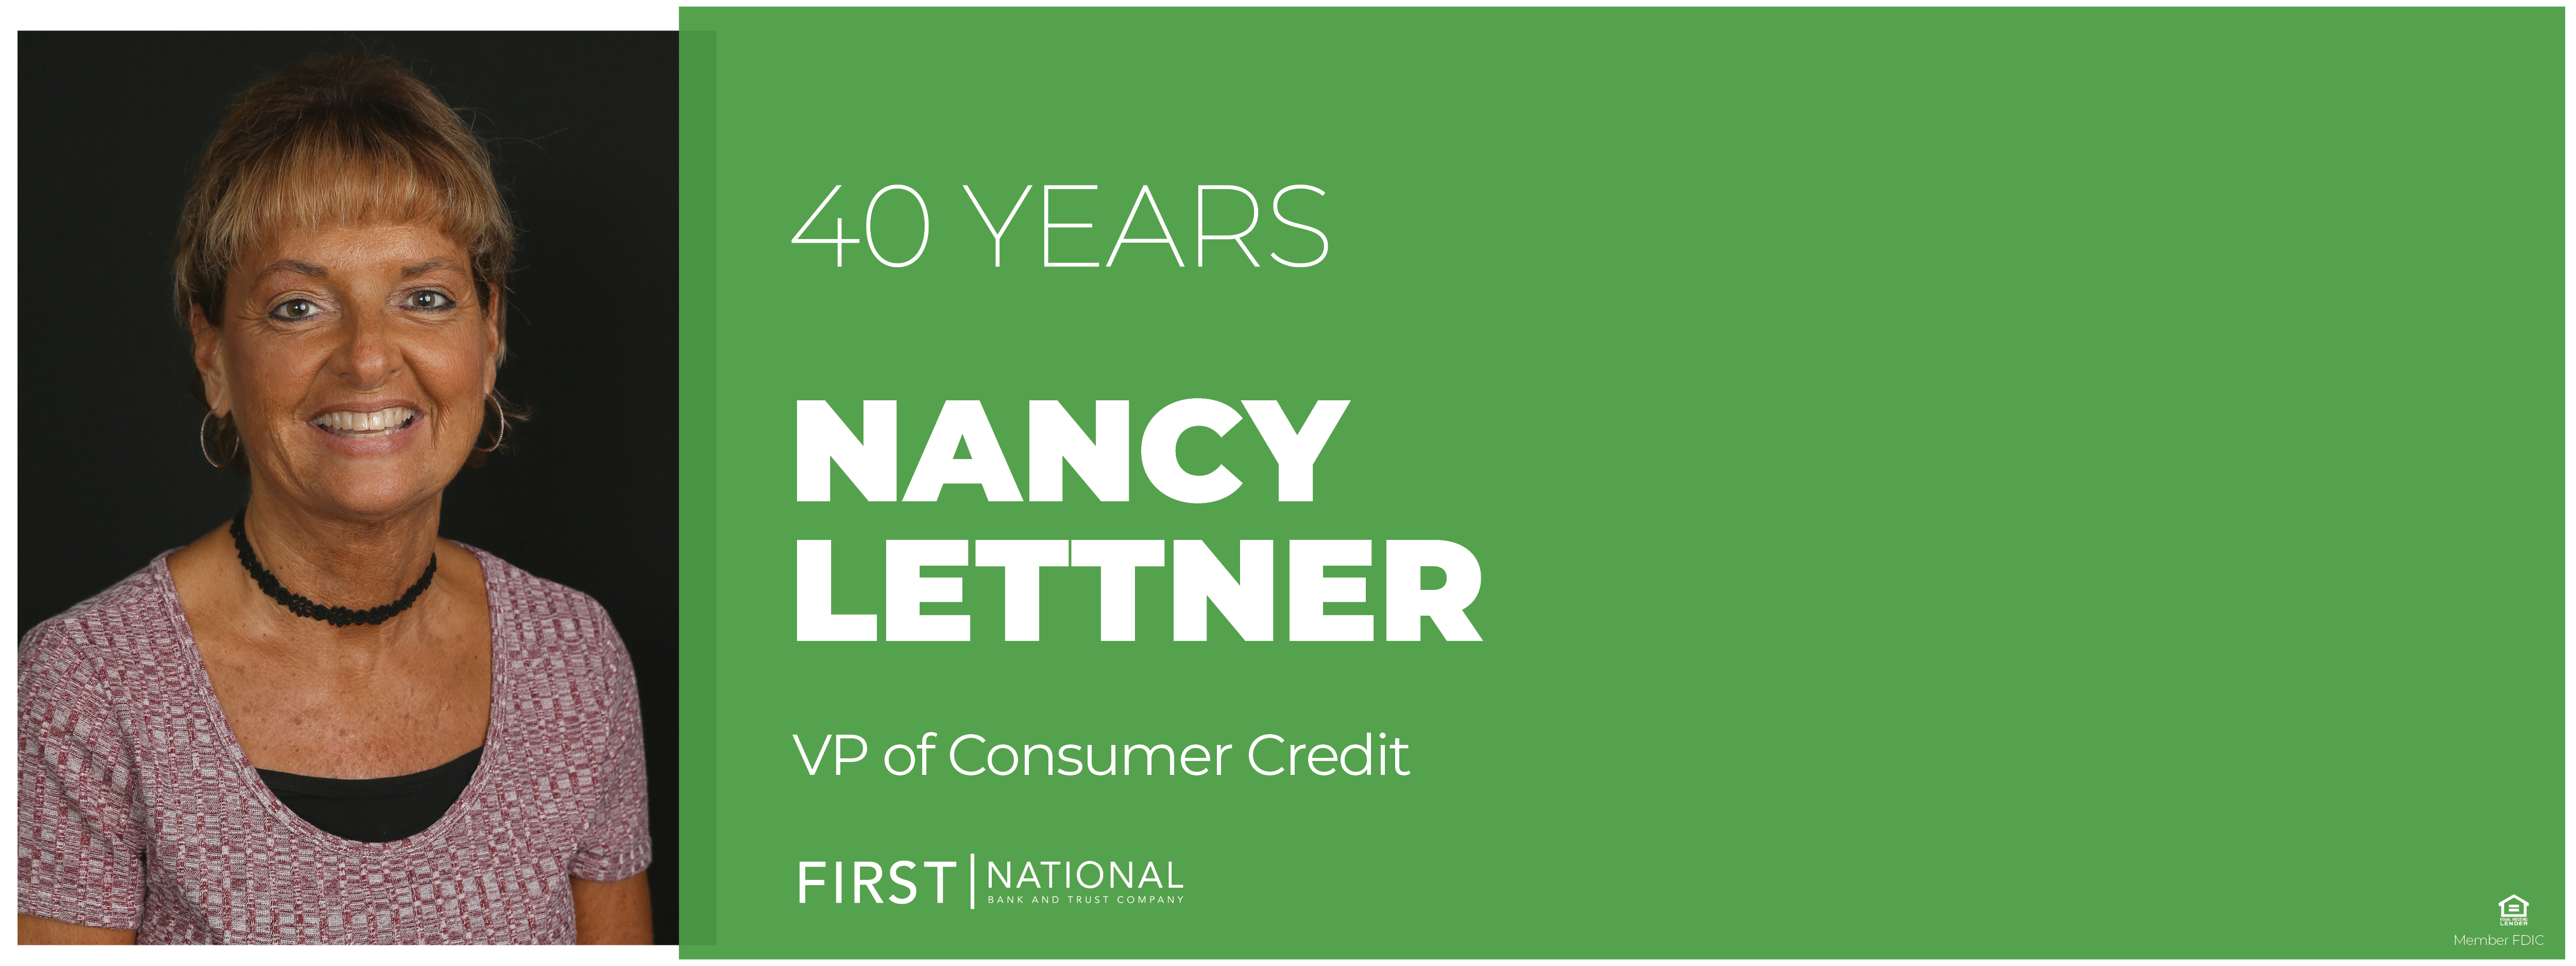 Nancy Lettner 40 years